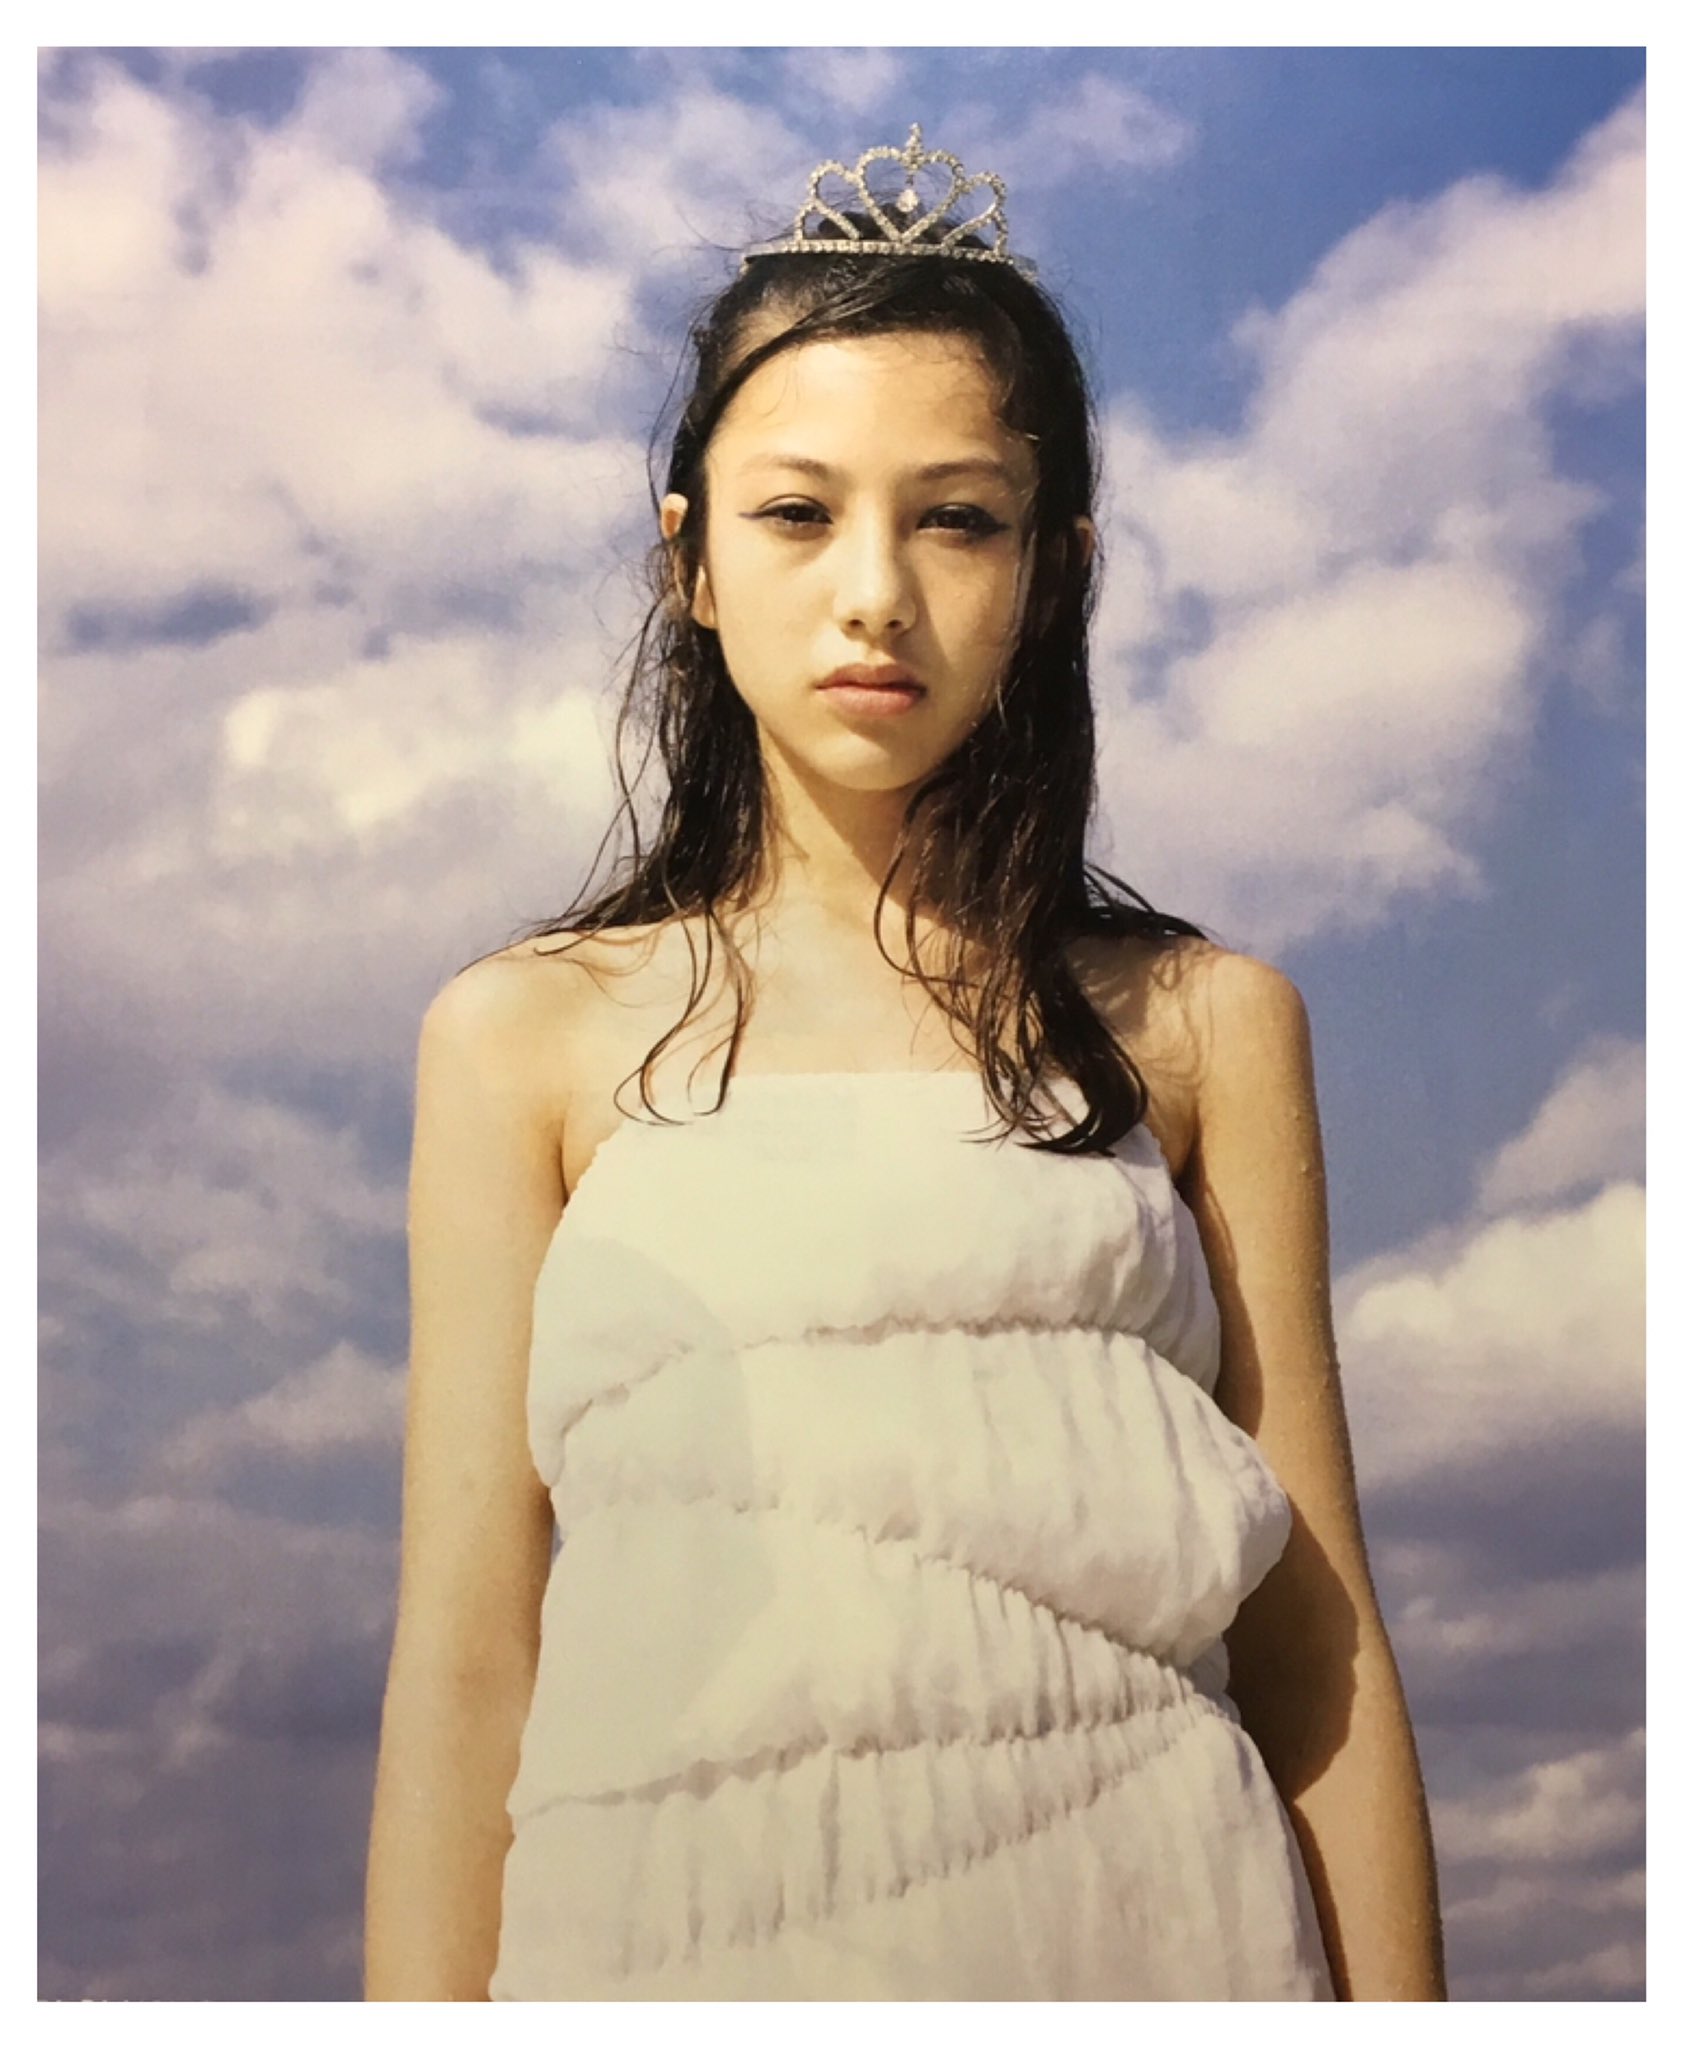 高橋マリ子のモデル経歴2～14歳で雑誌の専属モデルになった